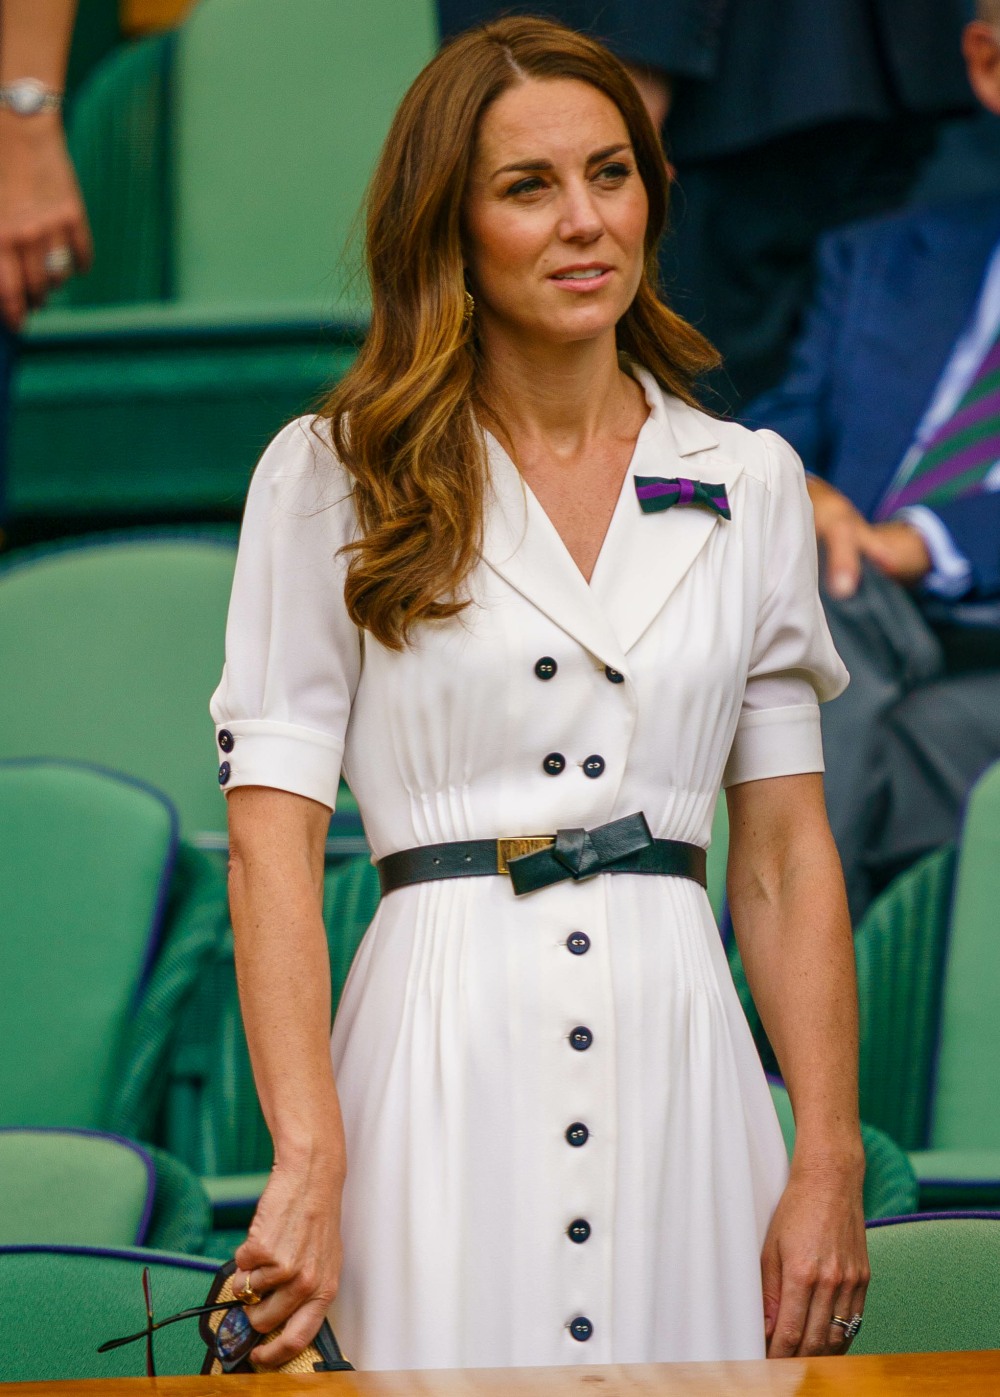 Герцогиня Кейт сознательно работала над тем, чтобы выглядеть моложе и современнее